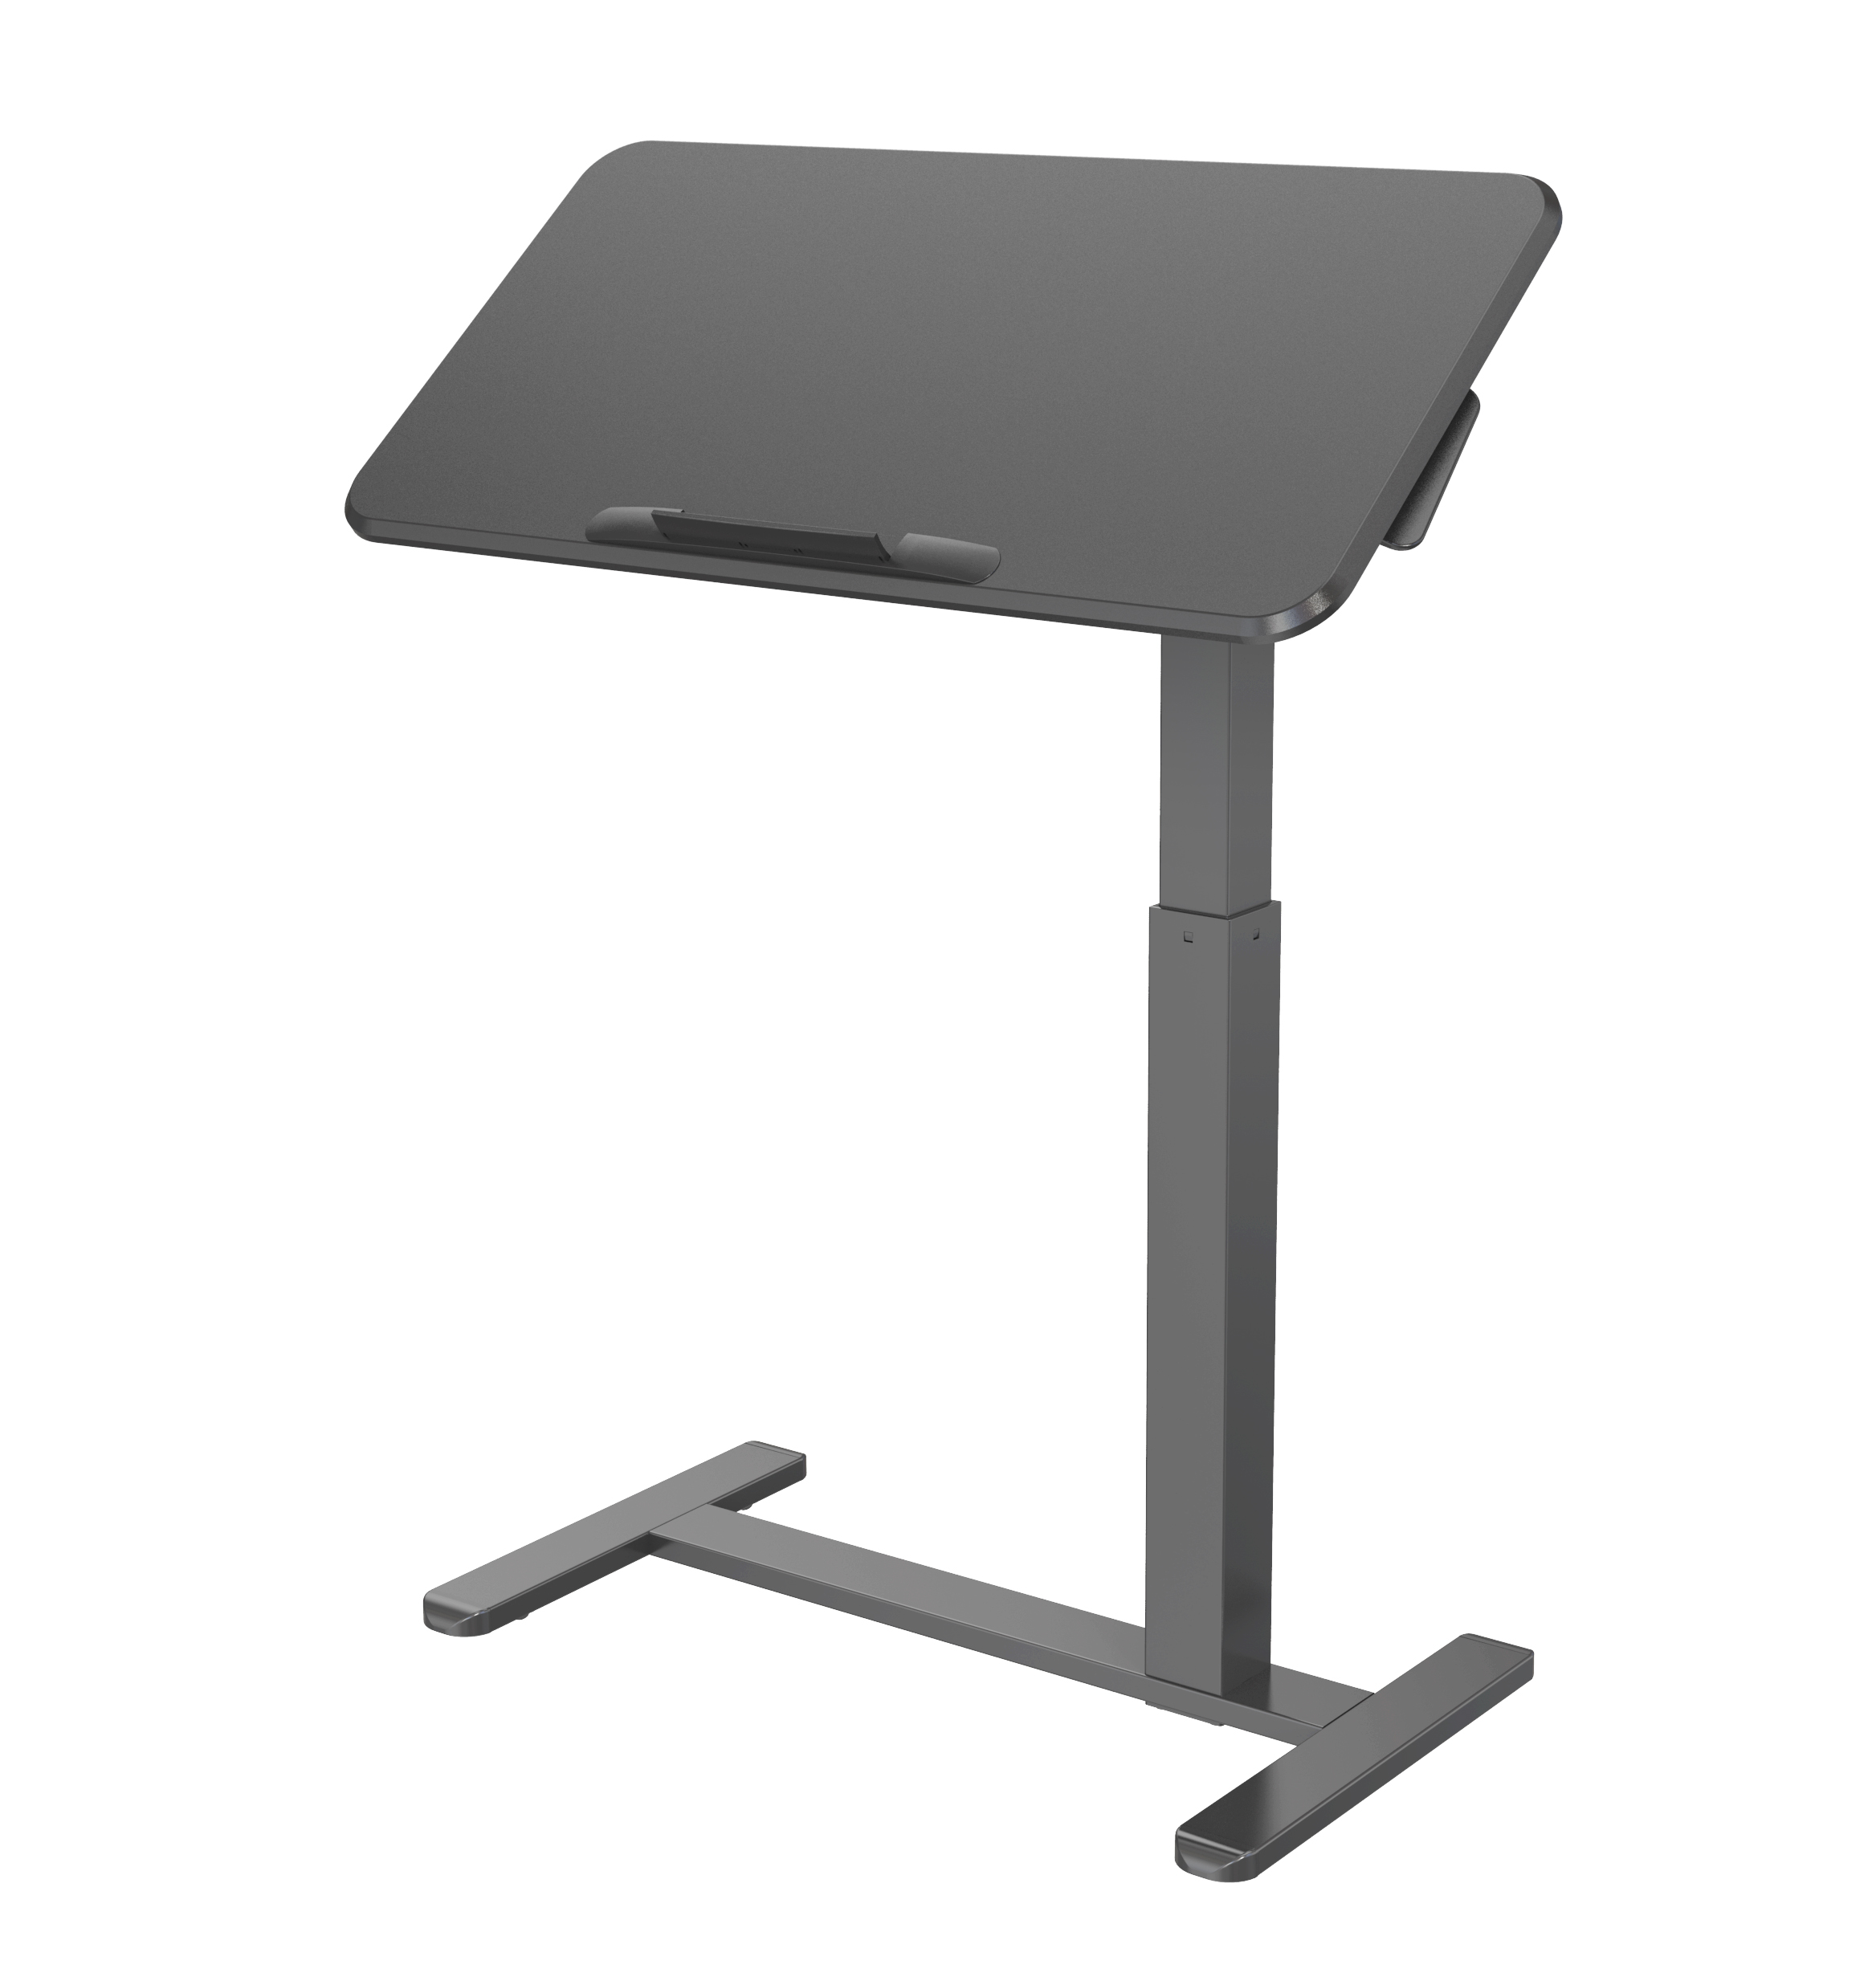 Mobile Manual Height Adjustable Office Desk with Tilted Desktop VM-FDS111B